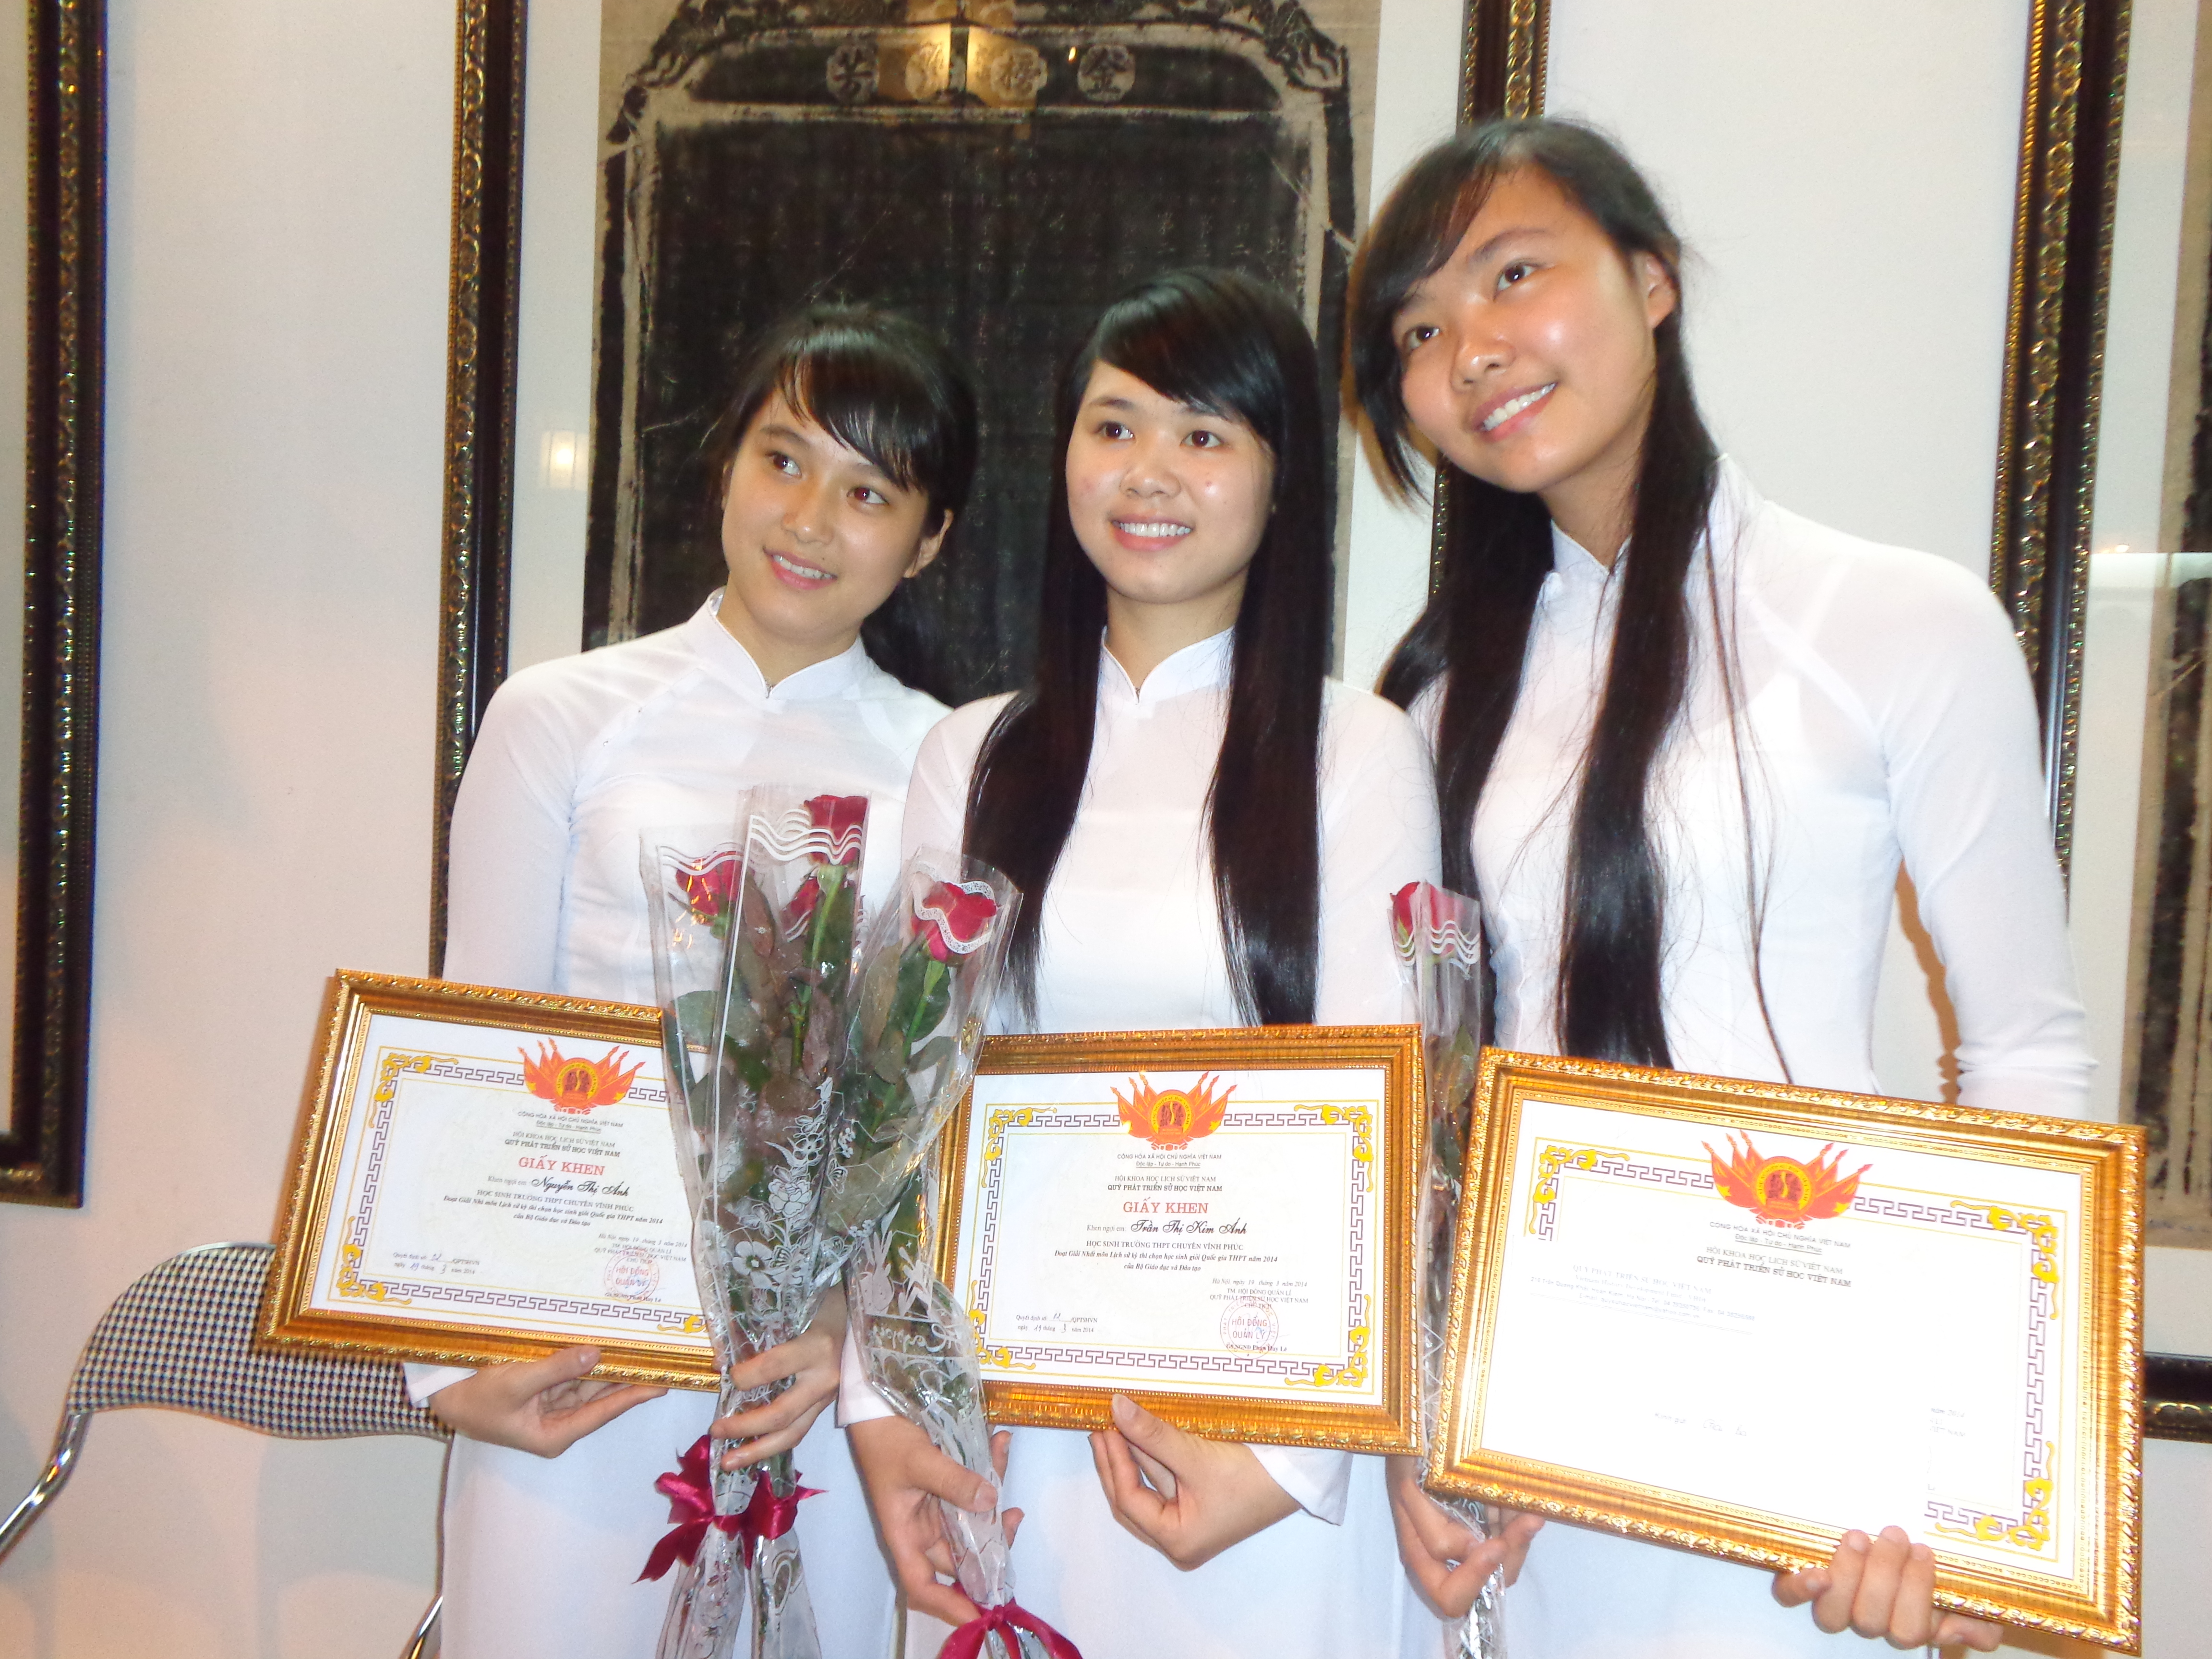 Chuyện học đường - Lần đầu tiên Hà Nội có HS đạt giải nhất quốc gia môn Lịch sử (Hình 3).